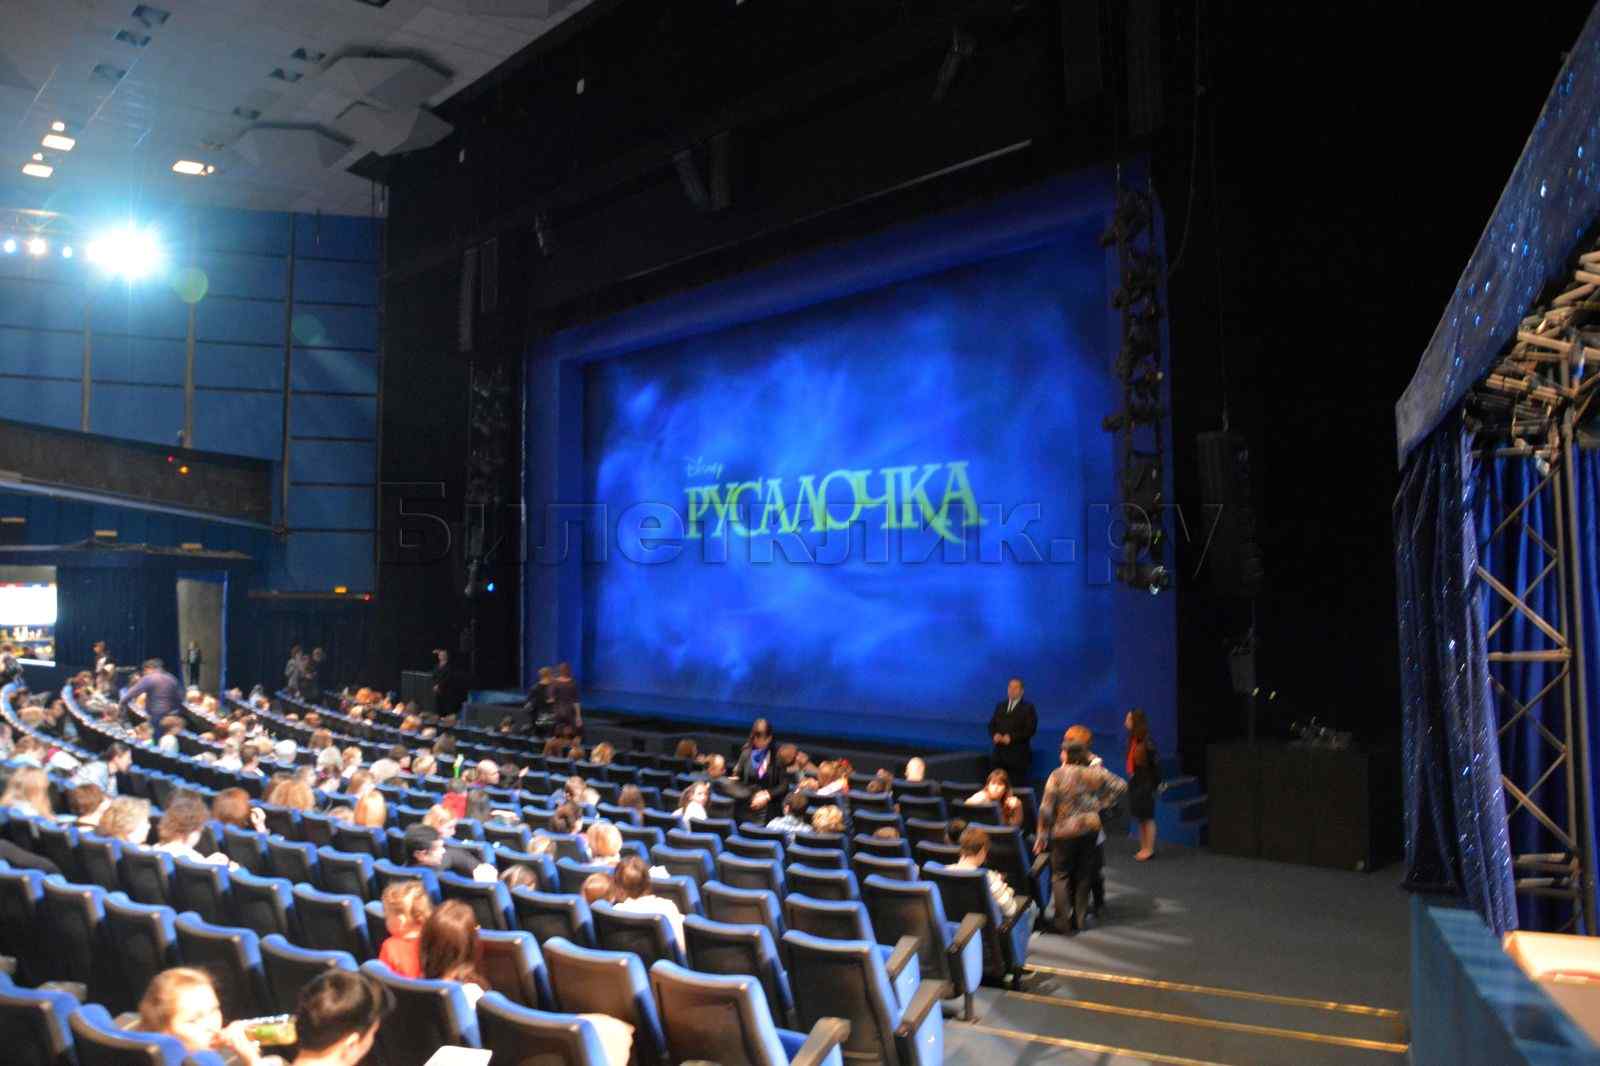 московский театр мюзикла вид с балкона